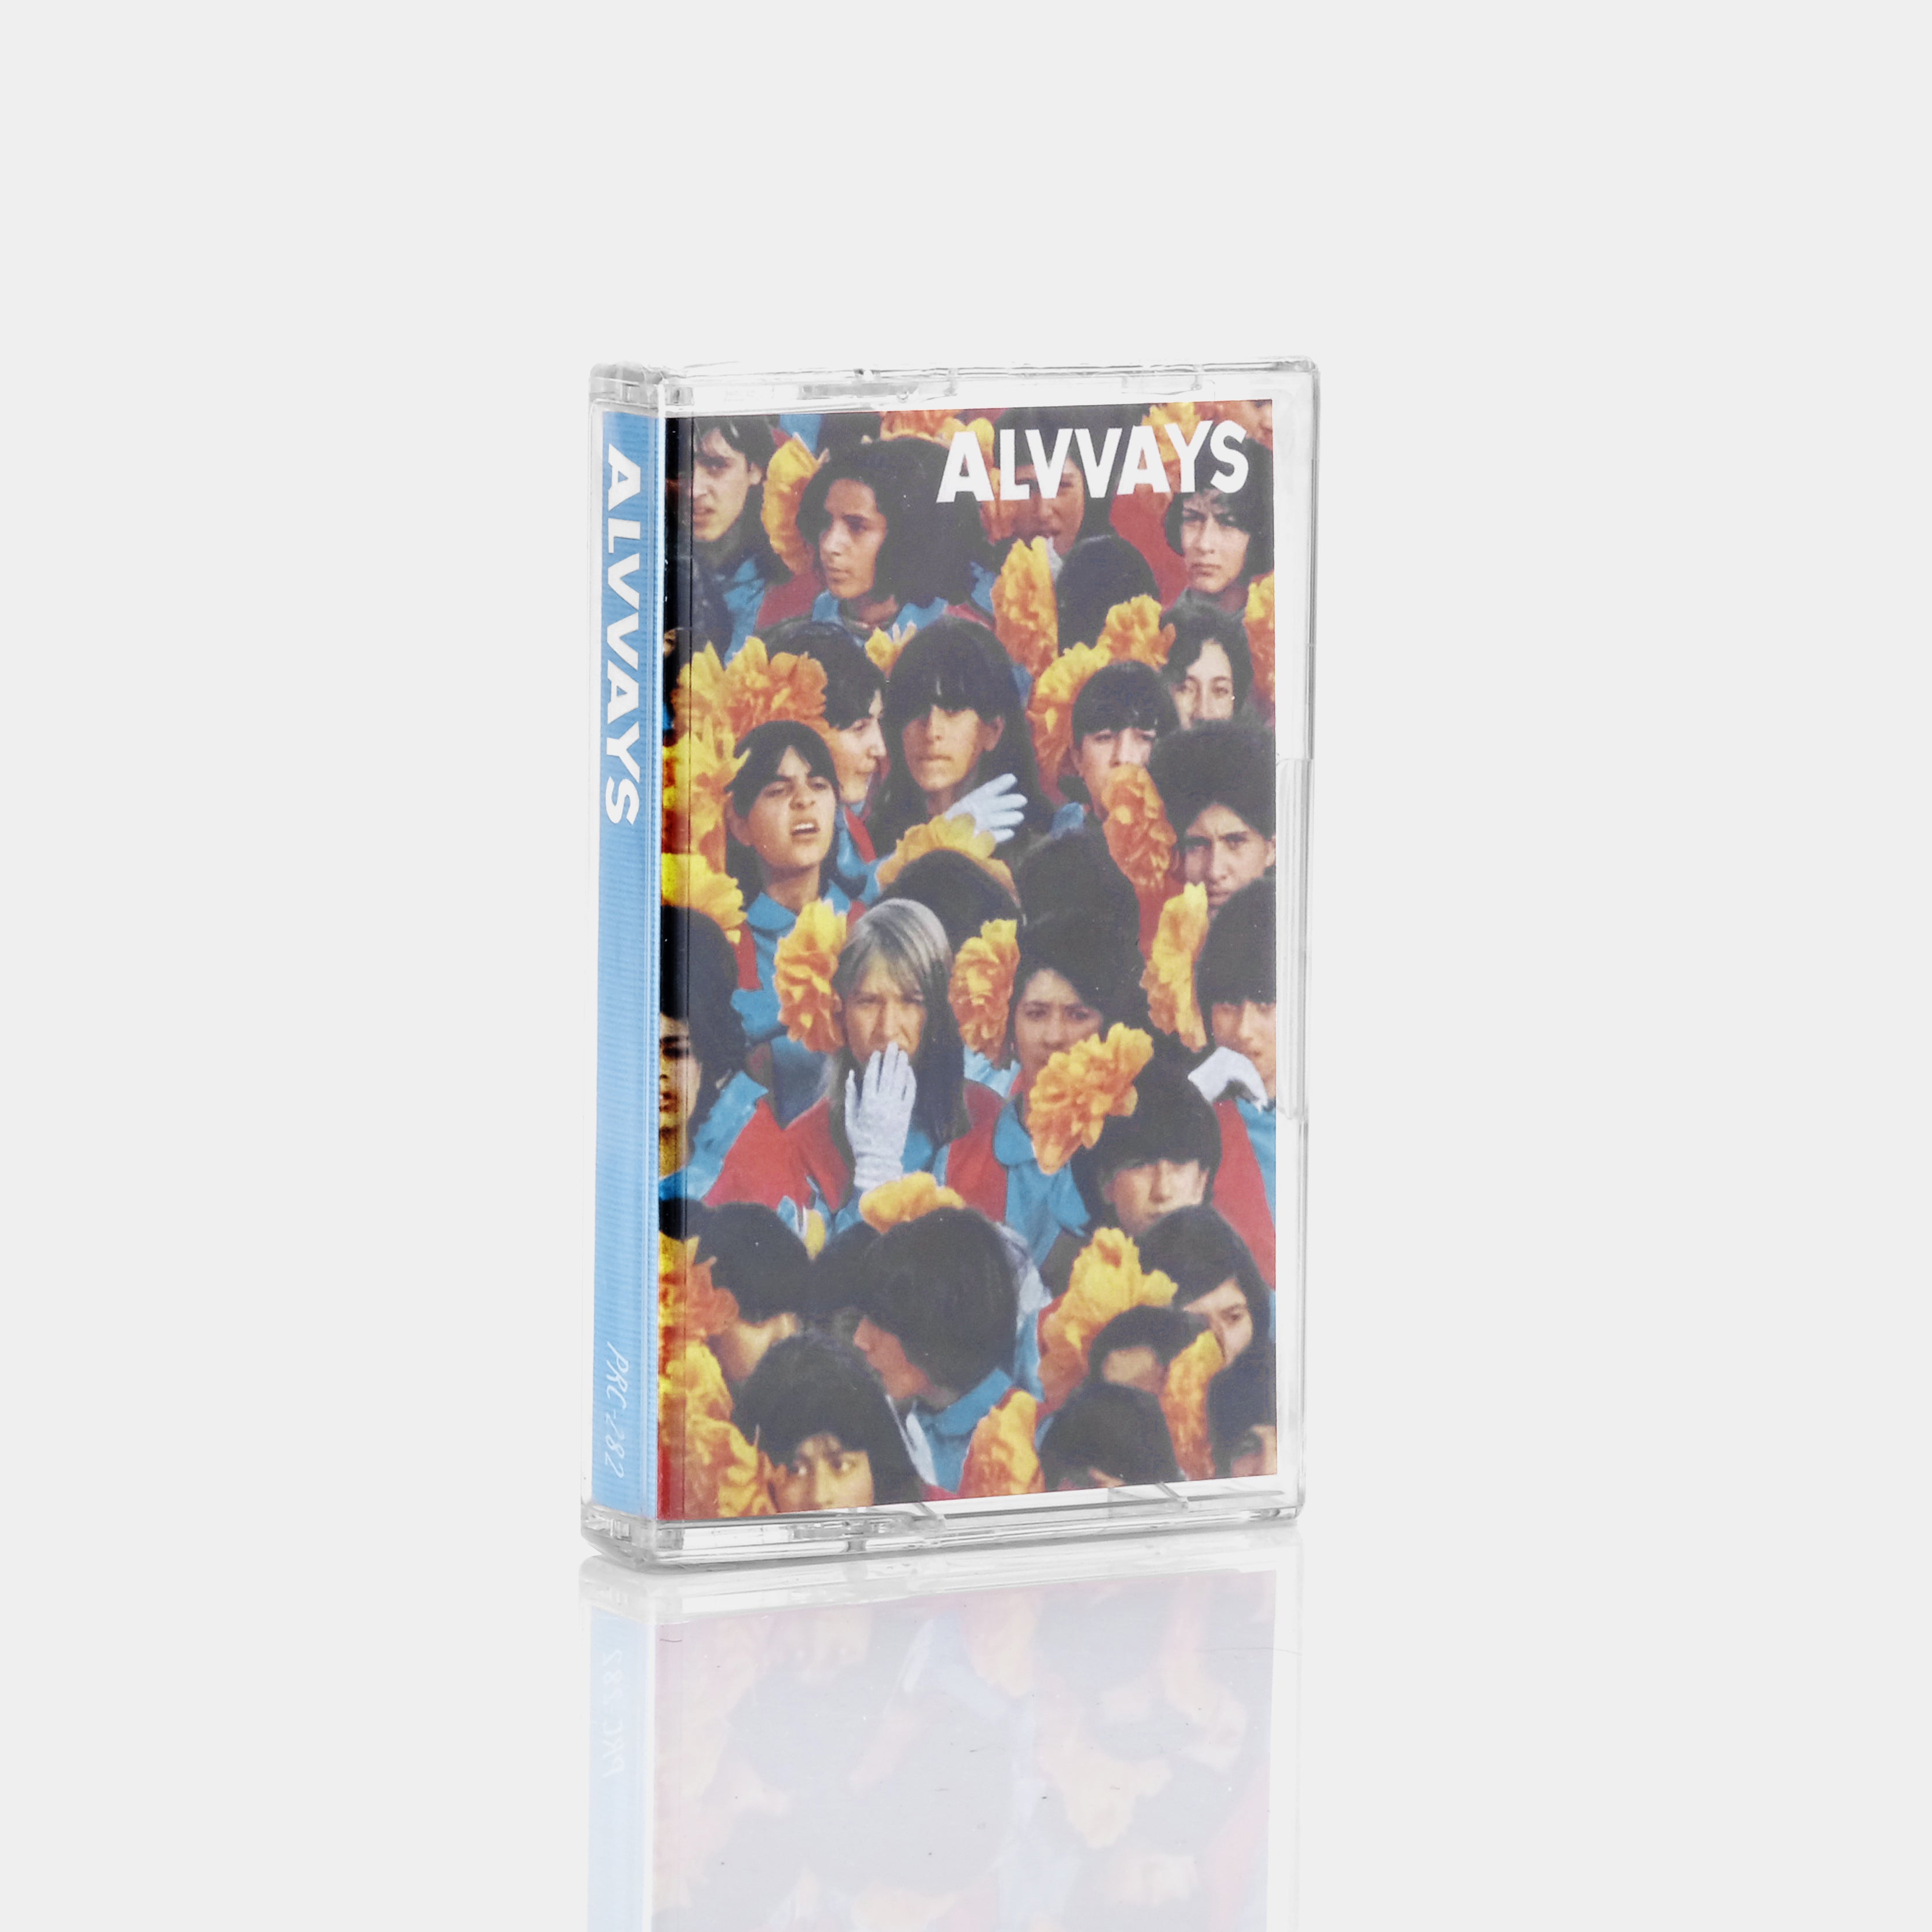 Alvvays - Alvvays Cassette Tape